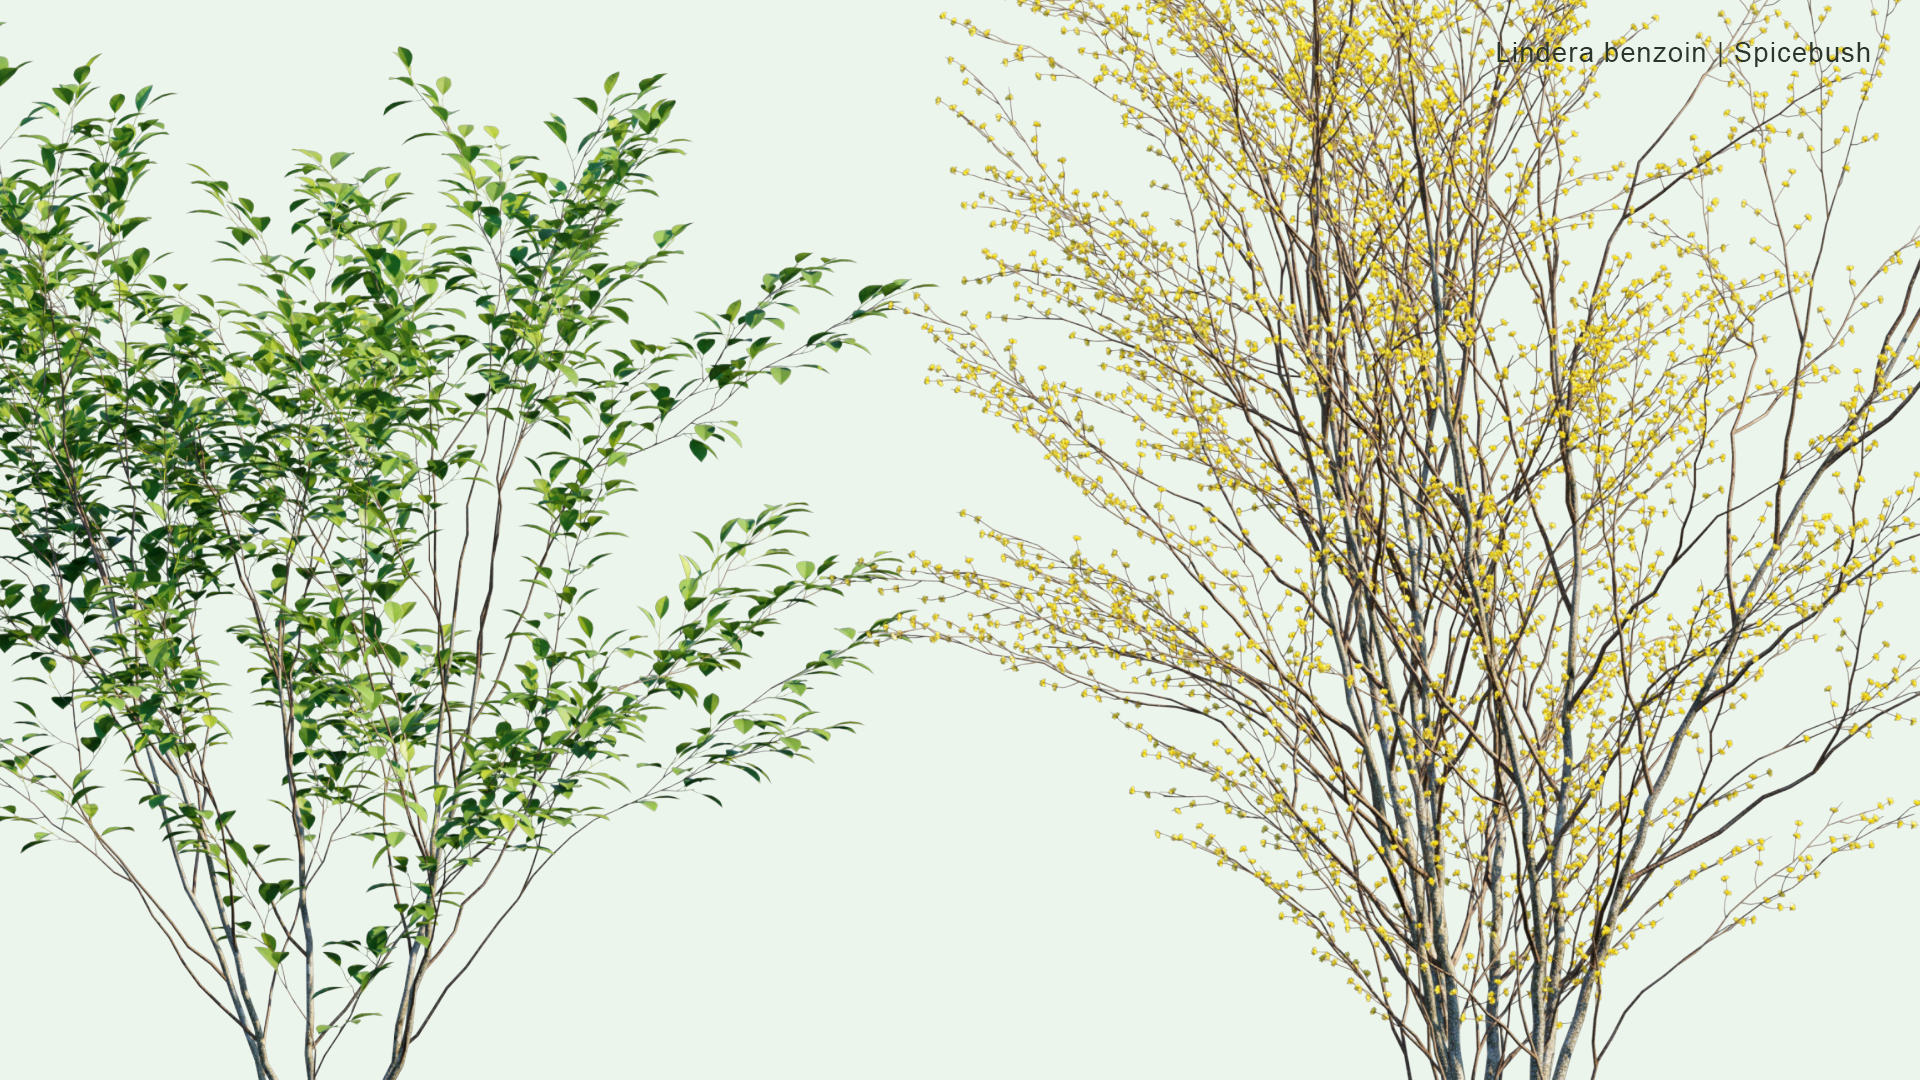 2D Lindera Benzoin - Spicebush, Common Spicebush, Northern Spicebush, Wild Allspice, Benjamin Bush